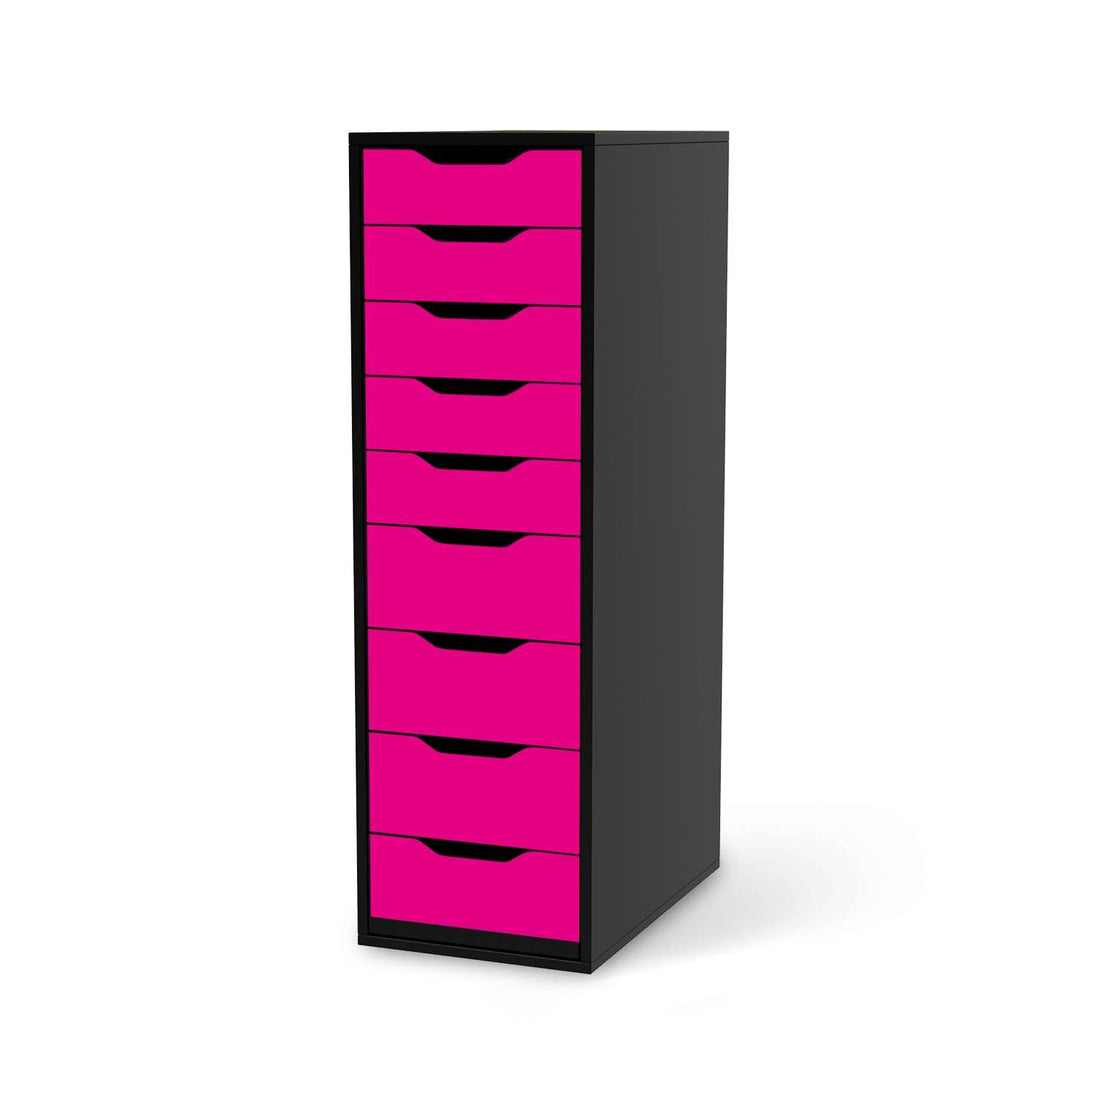 Folie für Möbel Pink Dark - IKEA Alex 9 Schubladen - schwarz